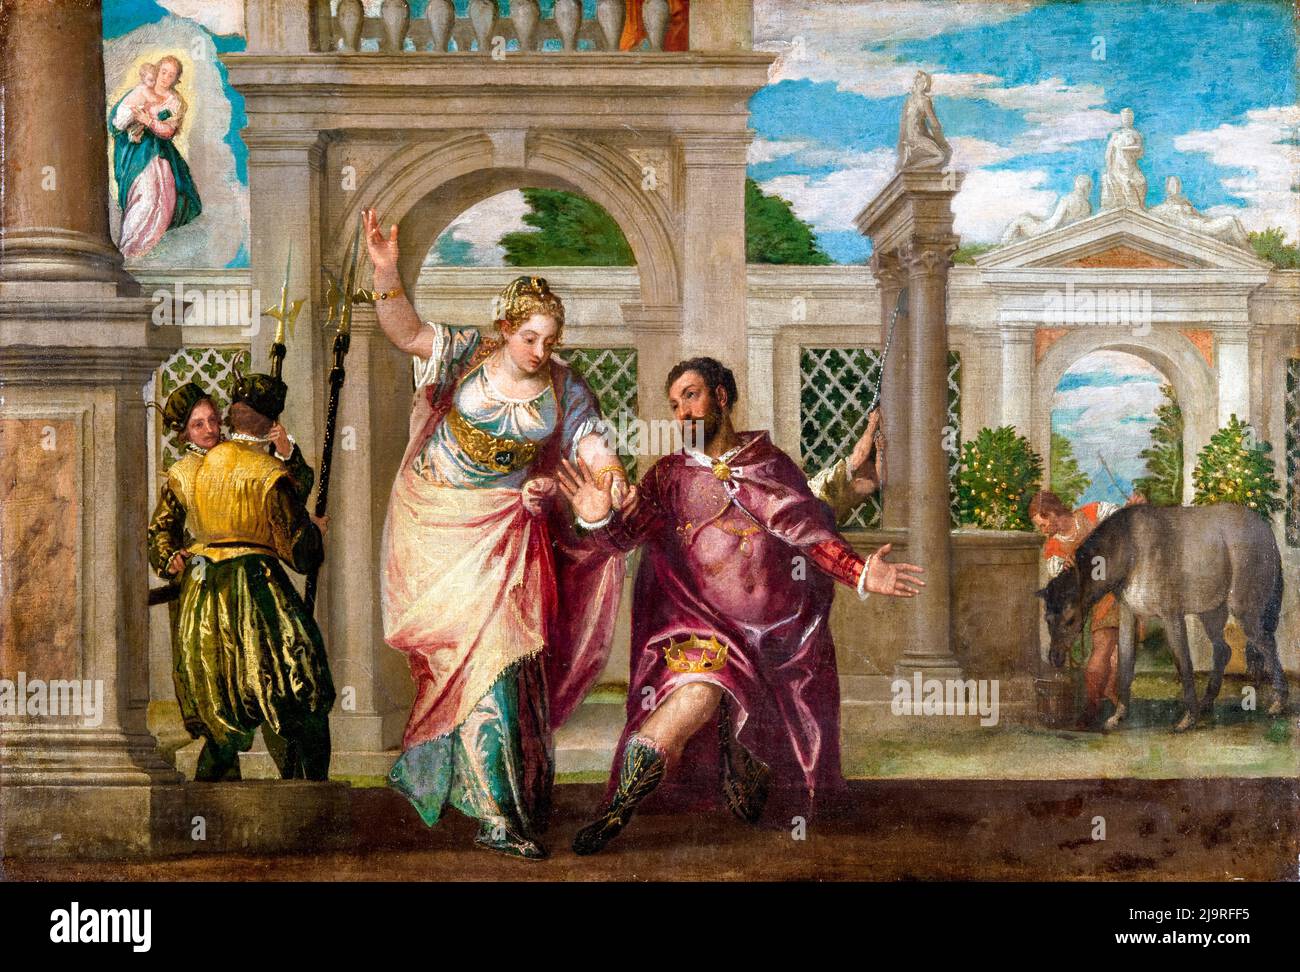 L'empereur Auguste et le sibyl, peinture de Paolo Veronese, avant 1588 Banque D'Images